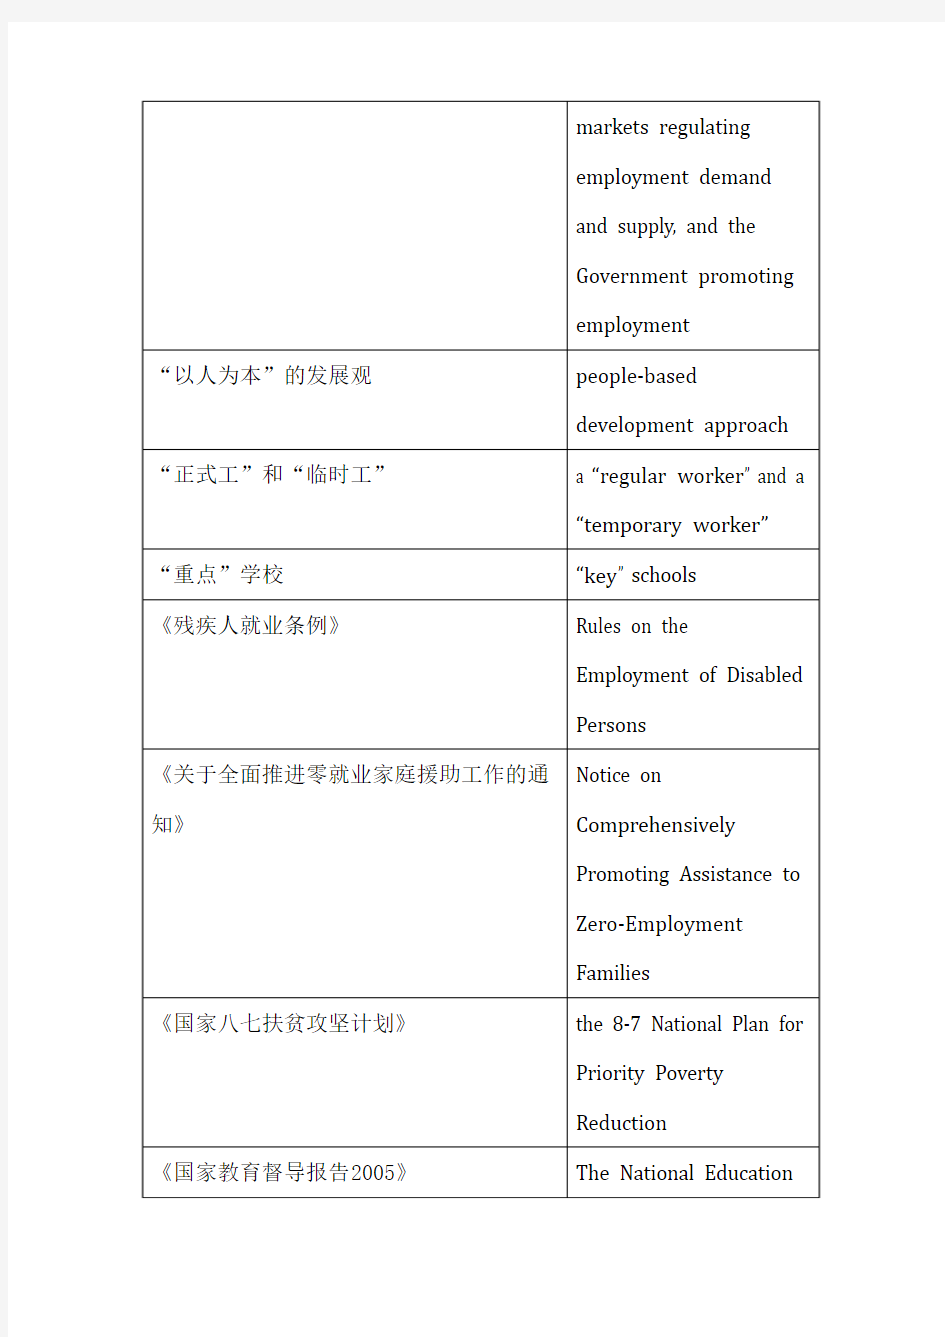 联合国人类发展报告中国部分(2007-2008)中英文对照词汇表